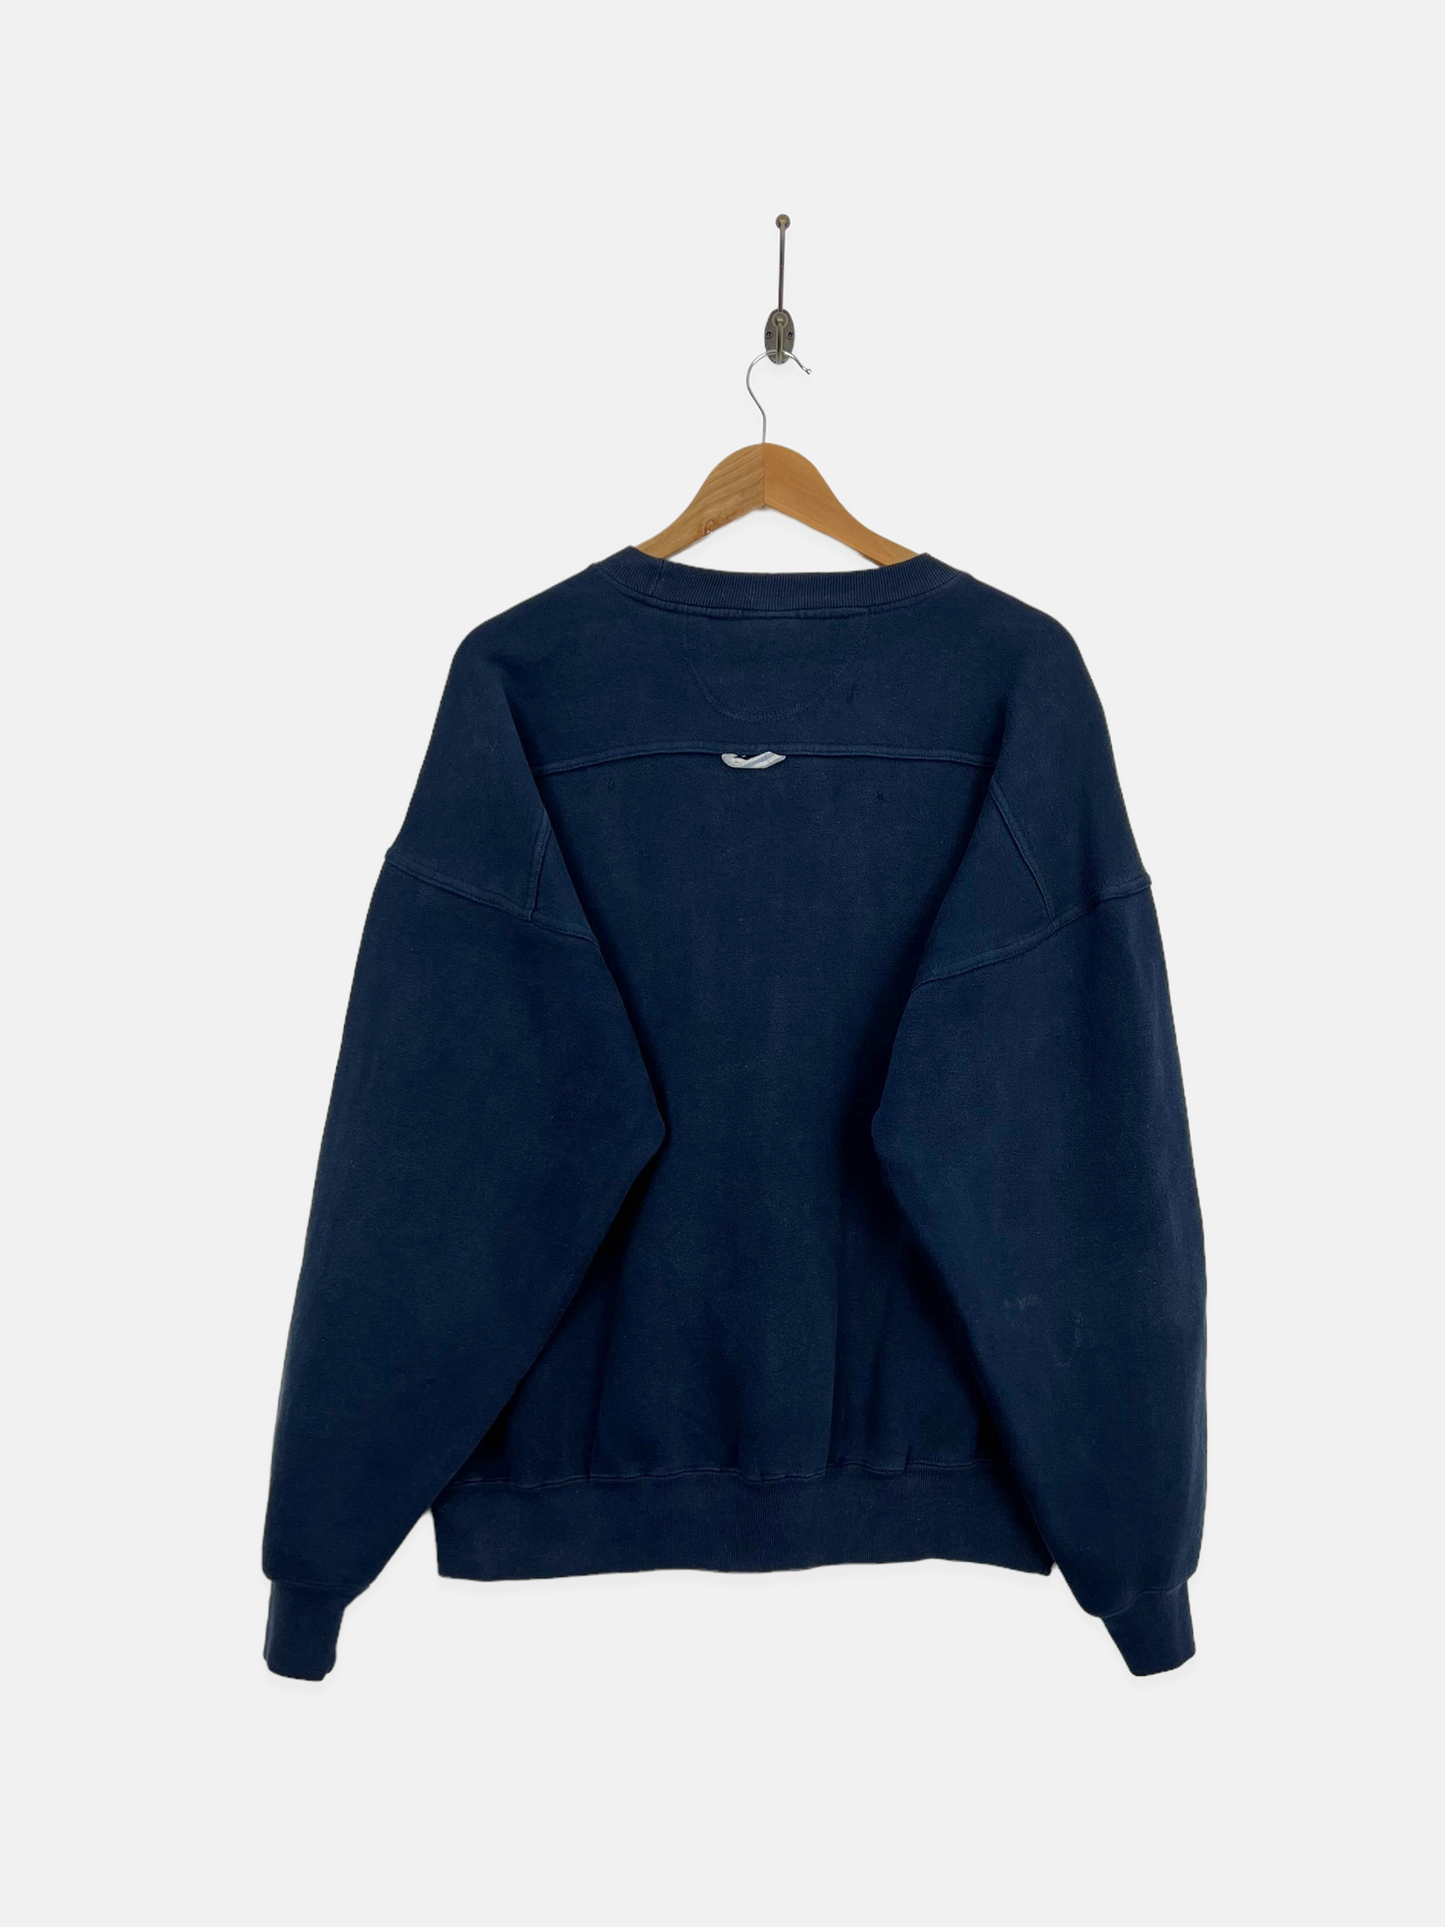 90's Badger Lake Michigan Vintage Sweatshirt Size M-L